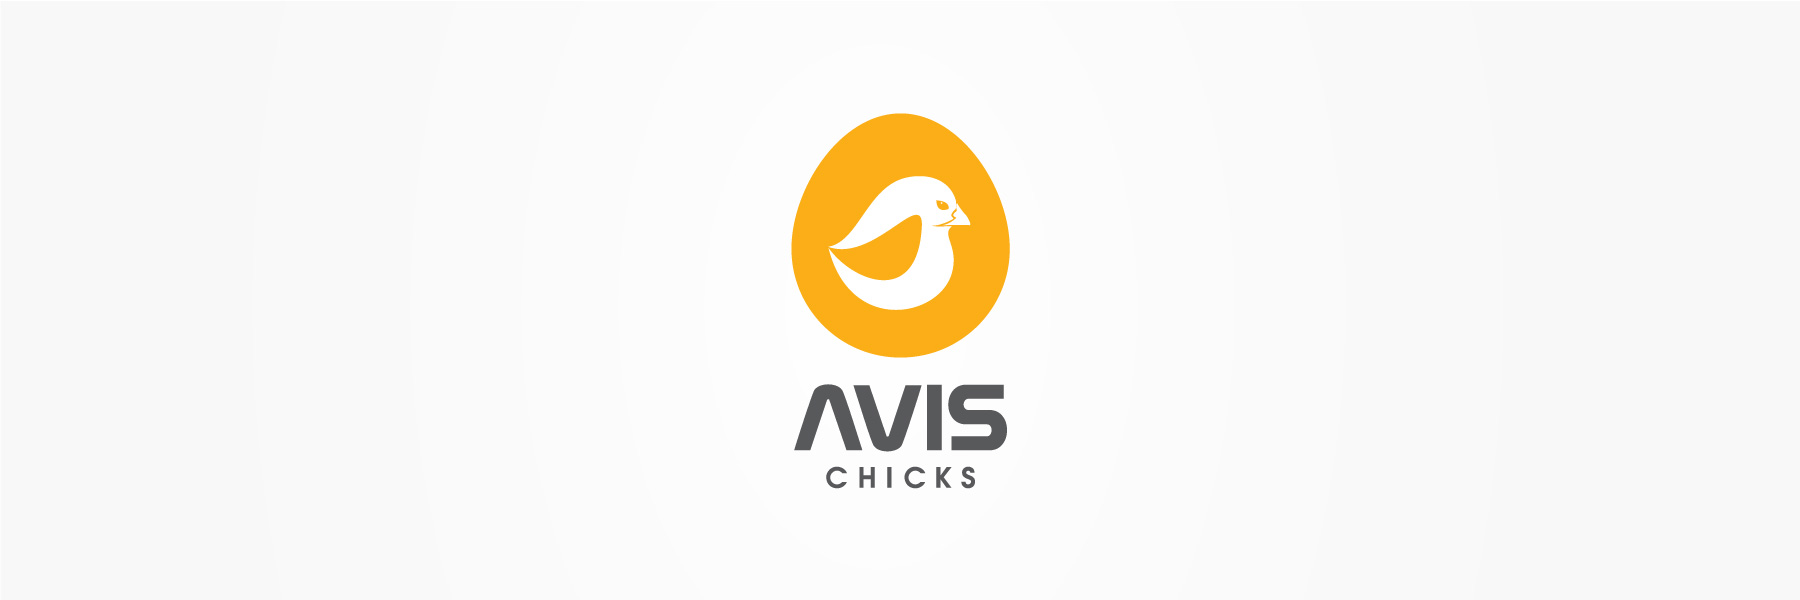 Avis chicks logo design